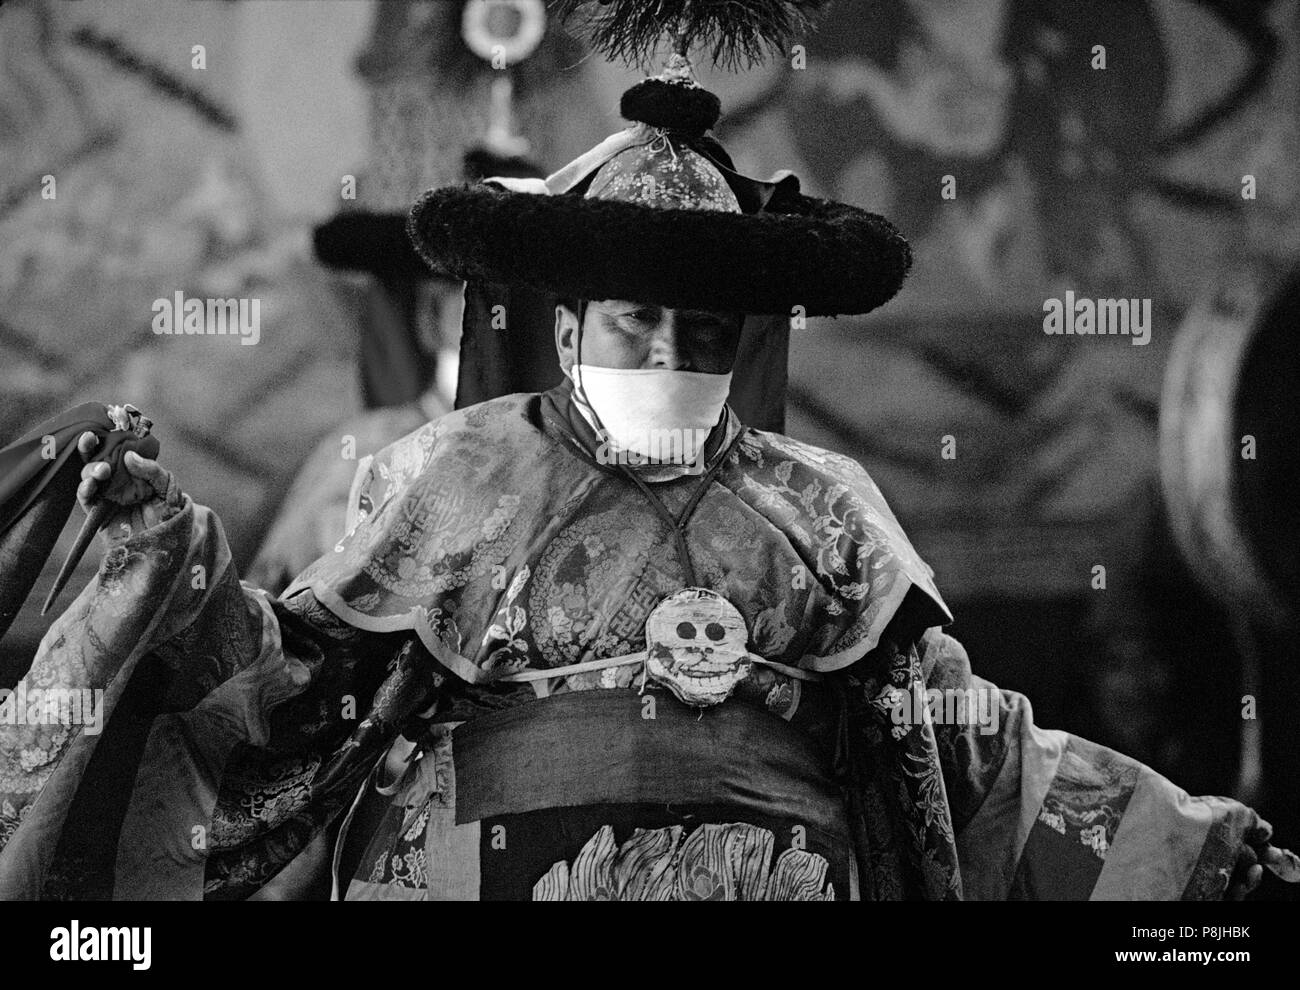 Danseuse en costume de soie tantrique, avec écharpe pour éviter l'inhalation des êtres vivants, le monastère de Tikse danses masquées - LADAKH, INDE Banque D'Images